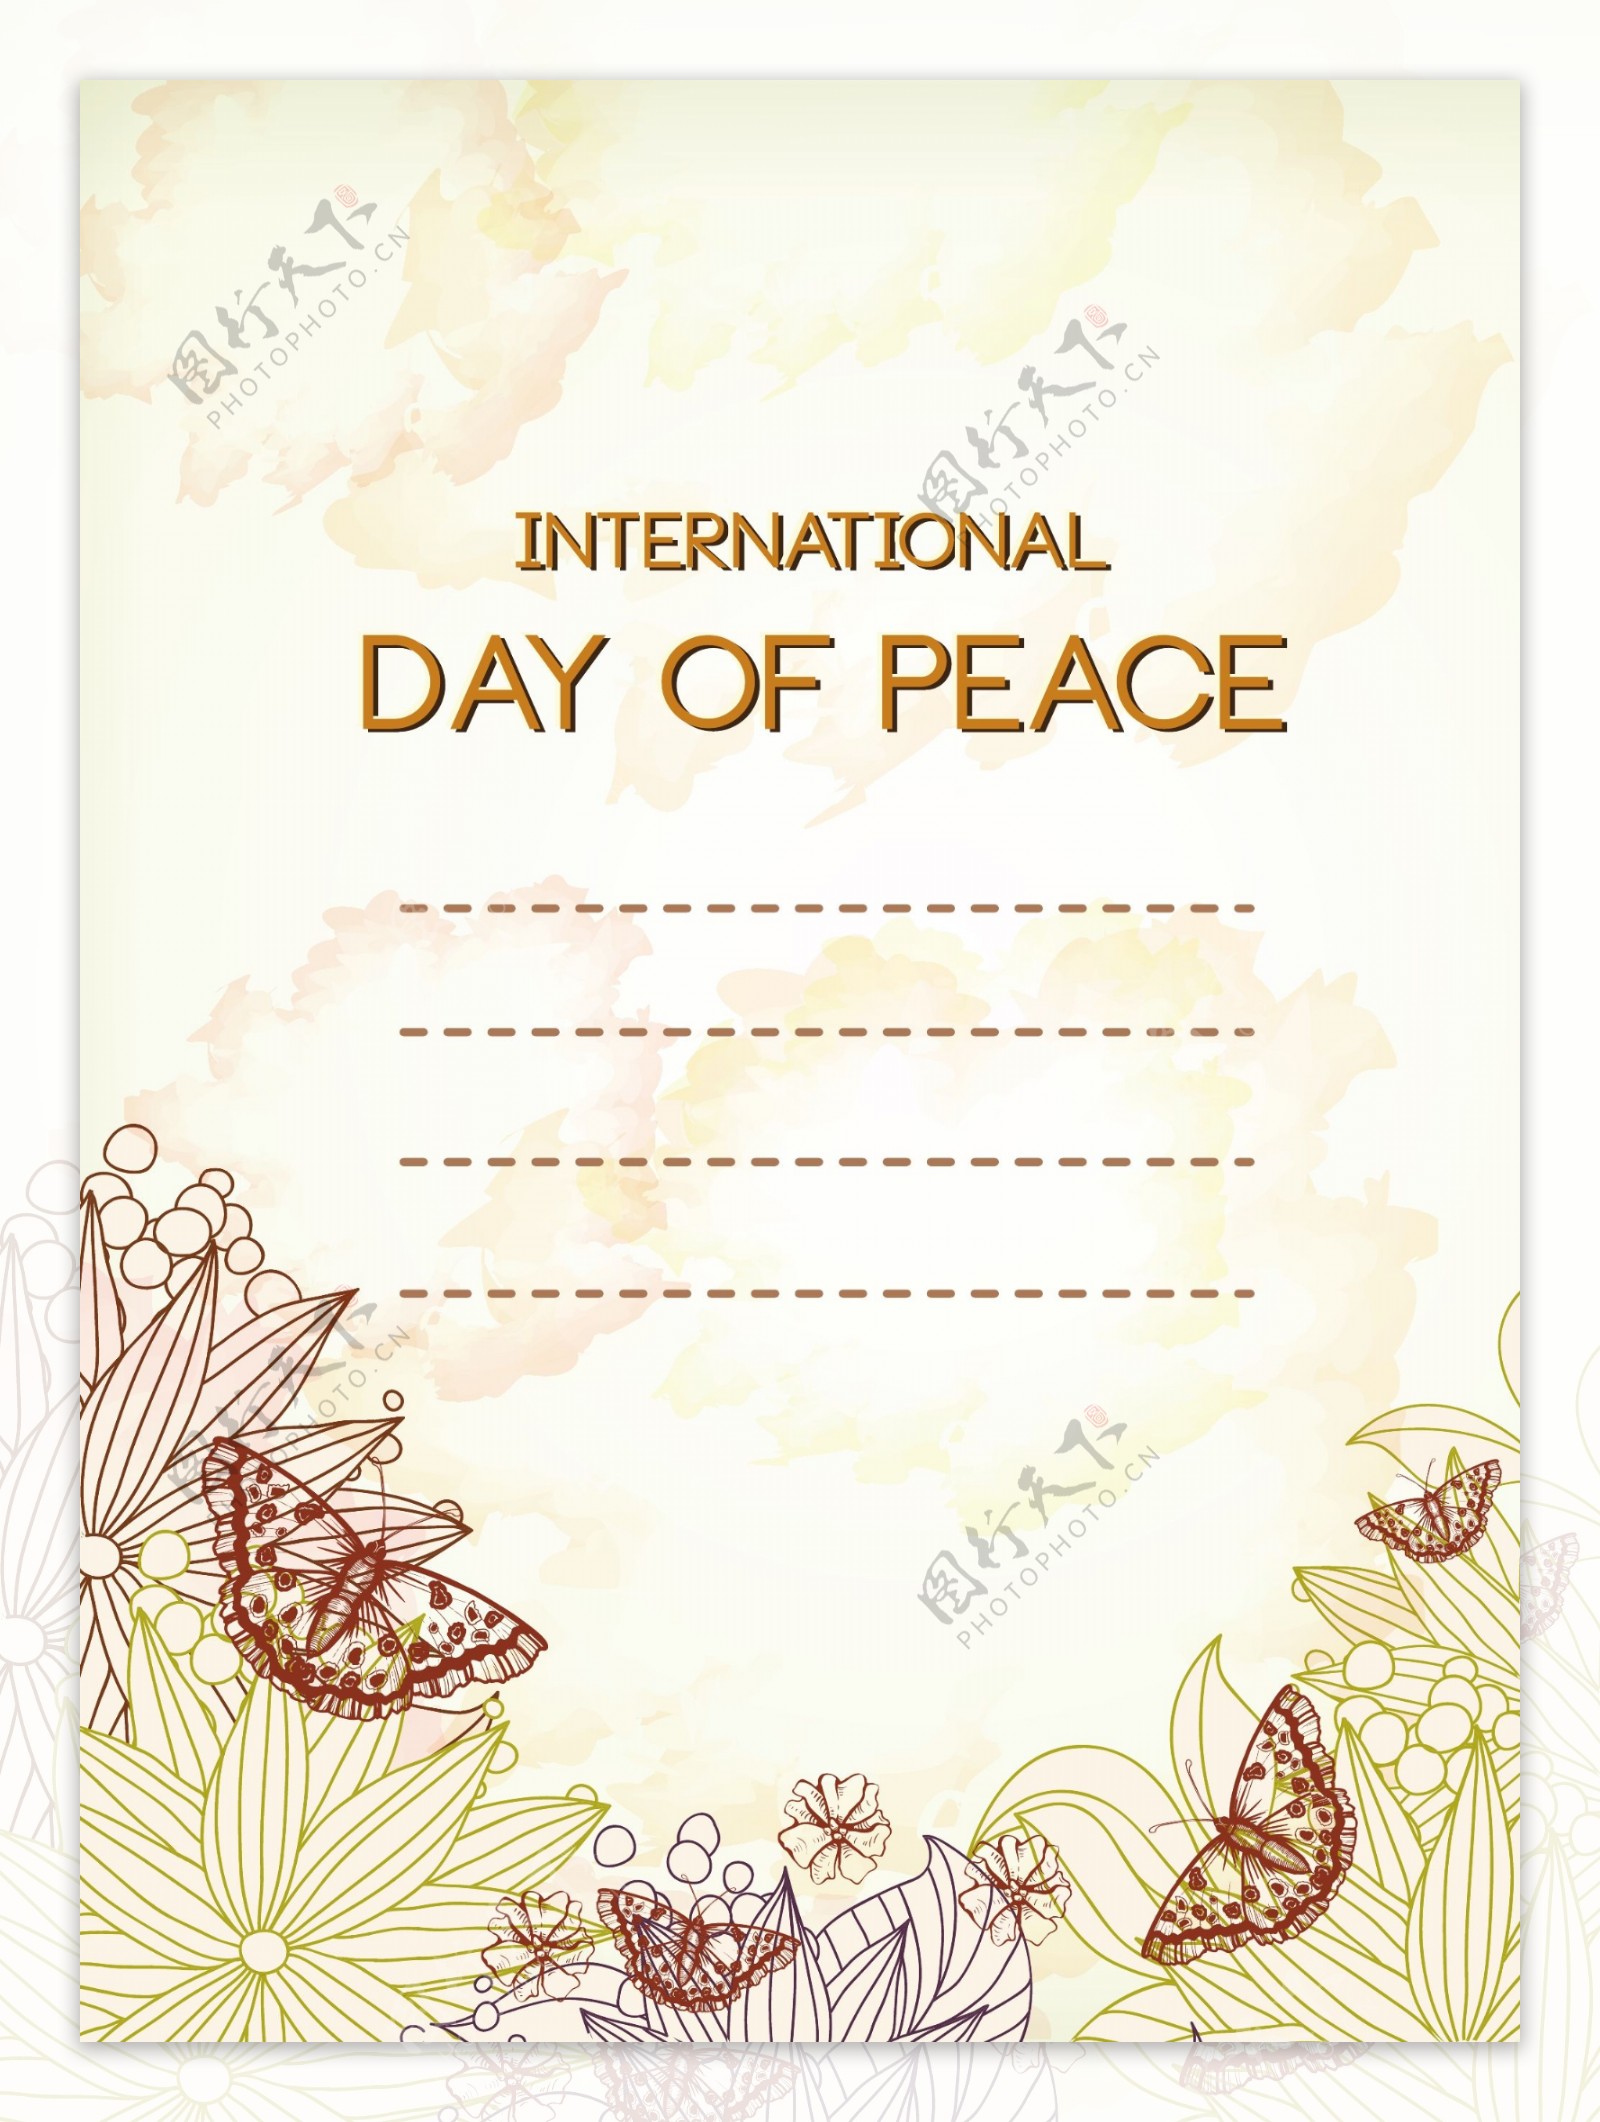 国际和平日向量